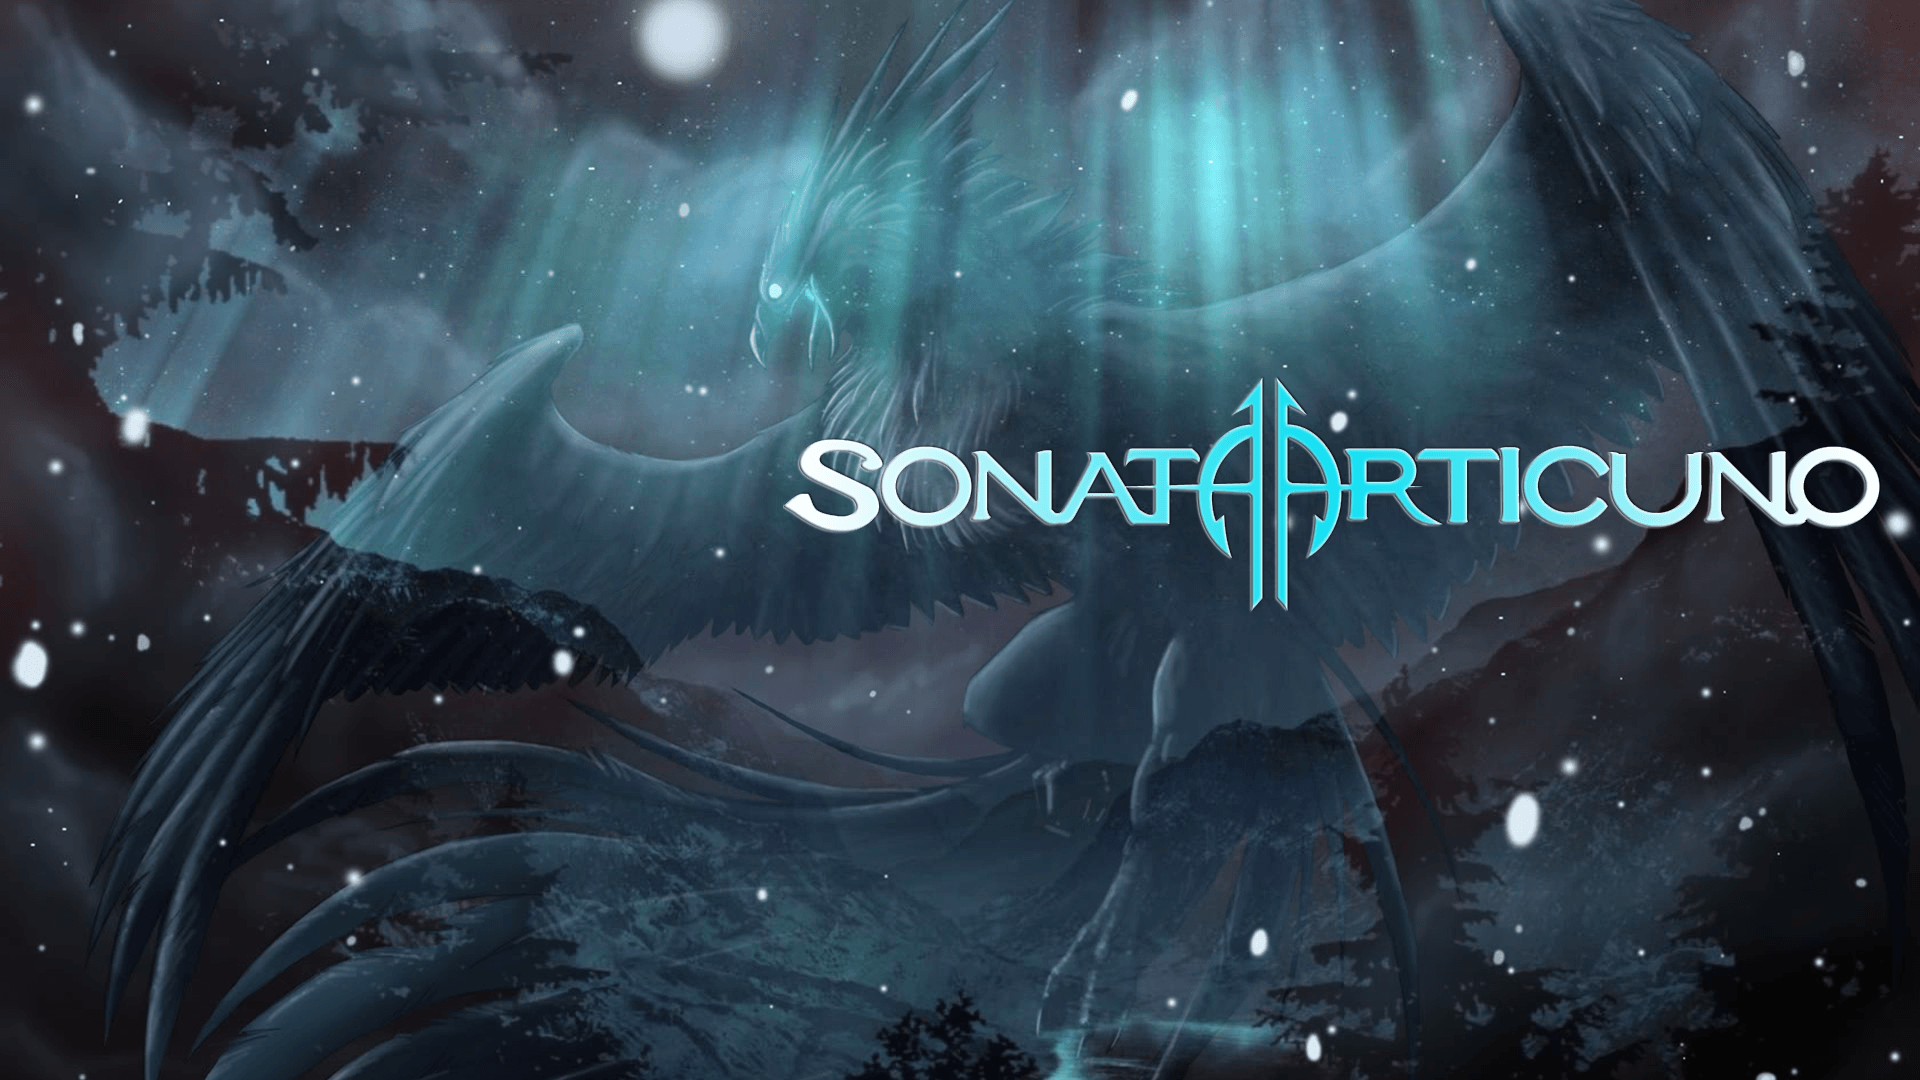 Sonata Arctica + Pokemon = Badass???. Nightwish and Sonata